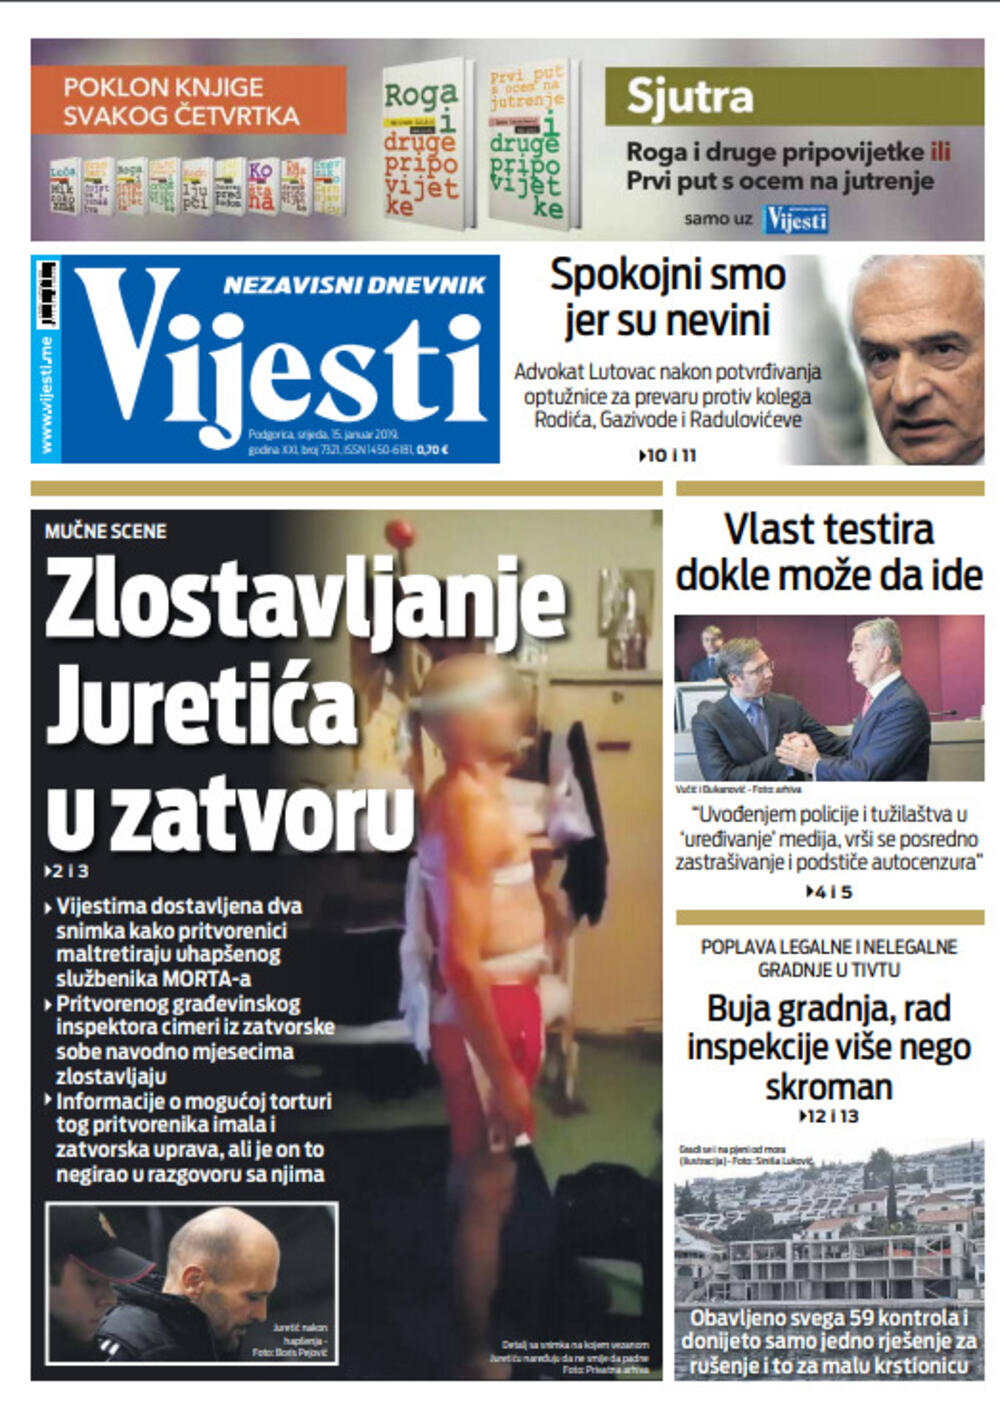 Naslovna strana "Vijesti" za 15. januar 2020. godine, Foto: Vijesti